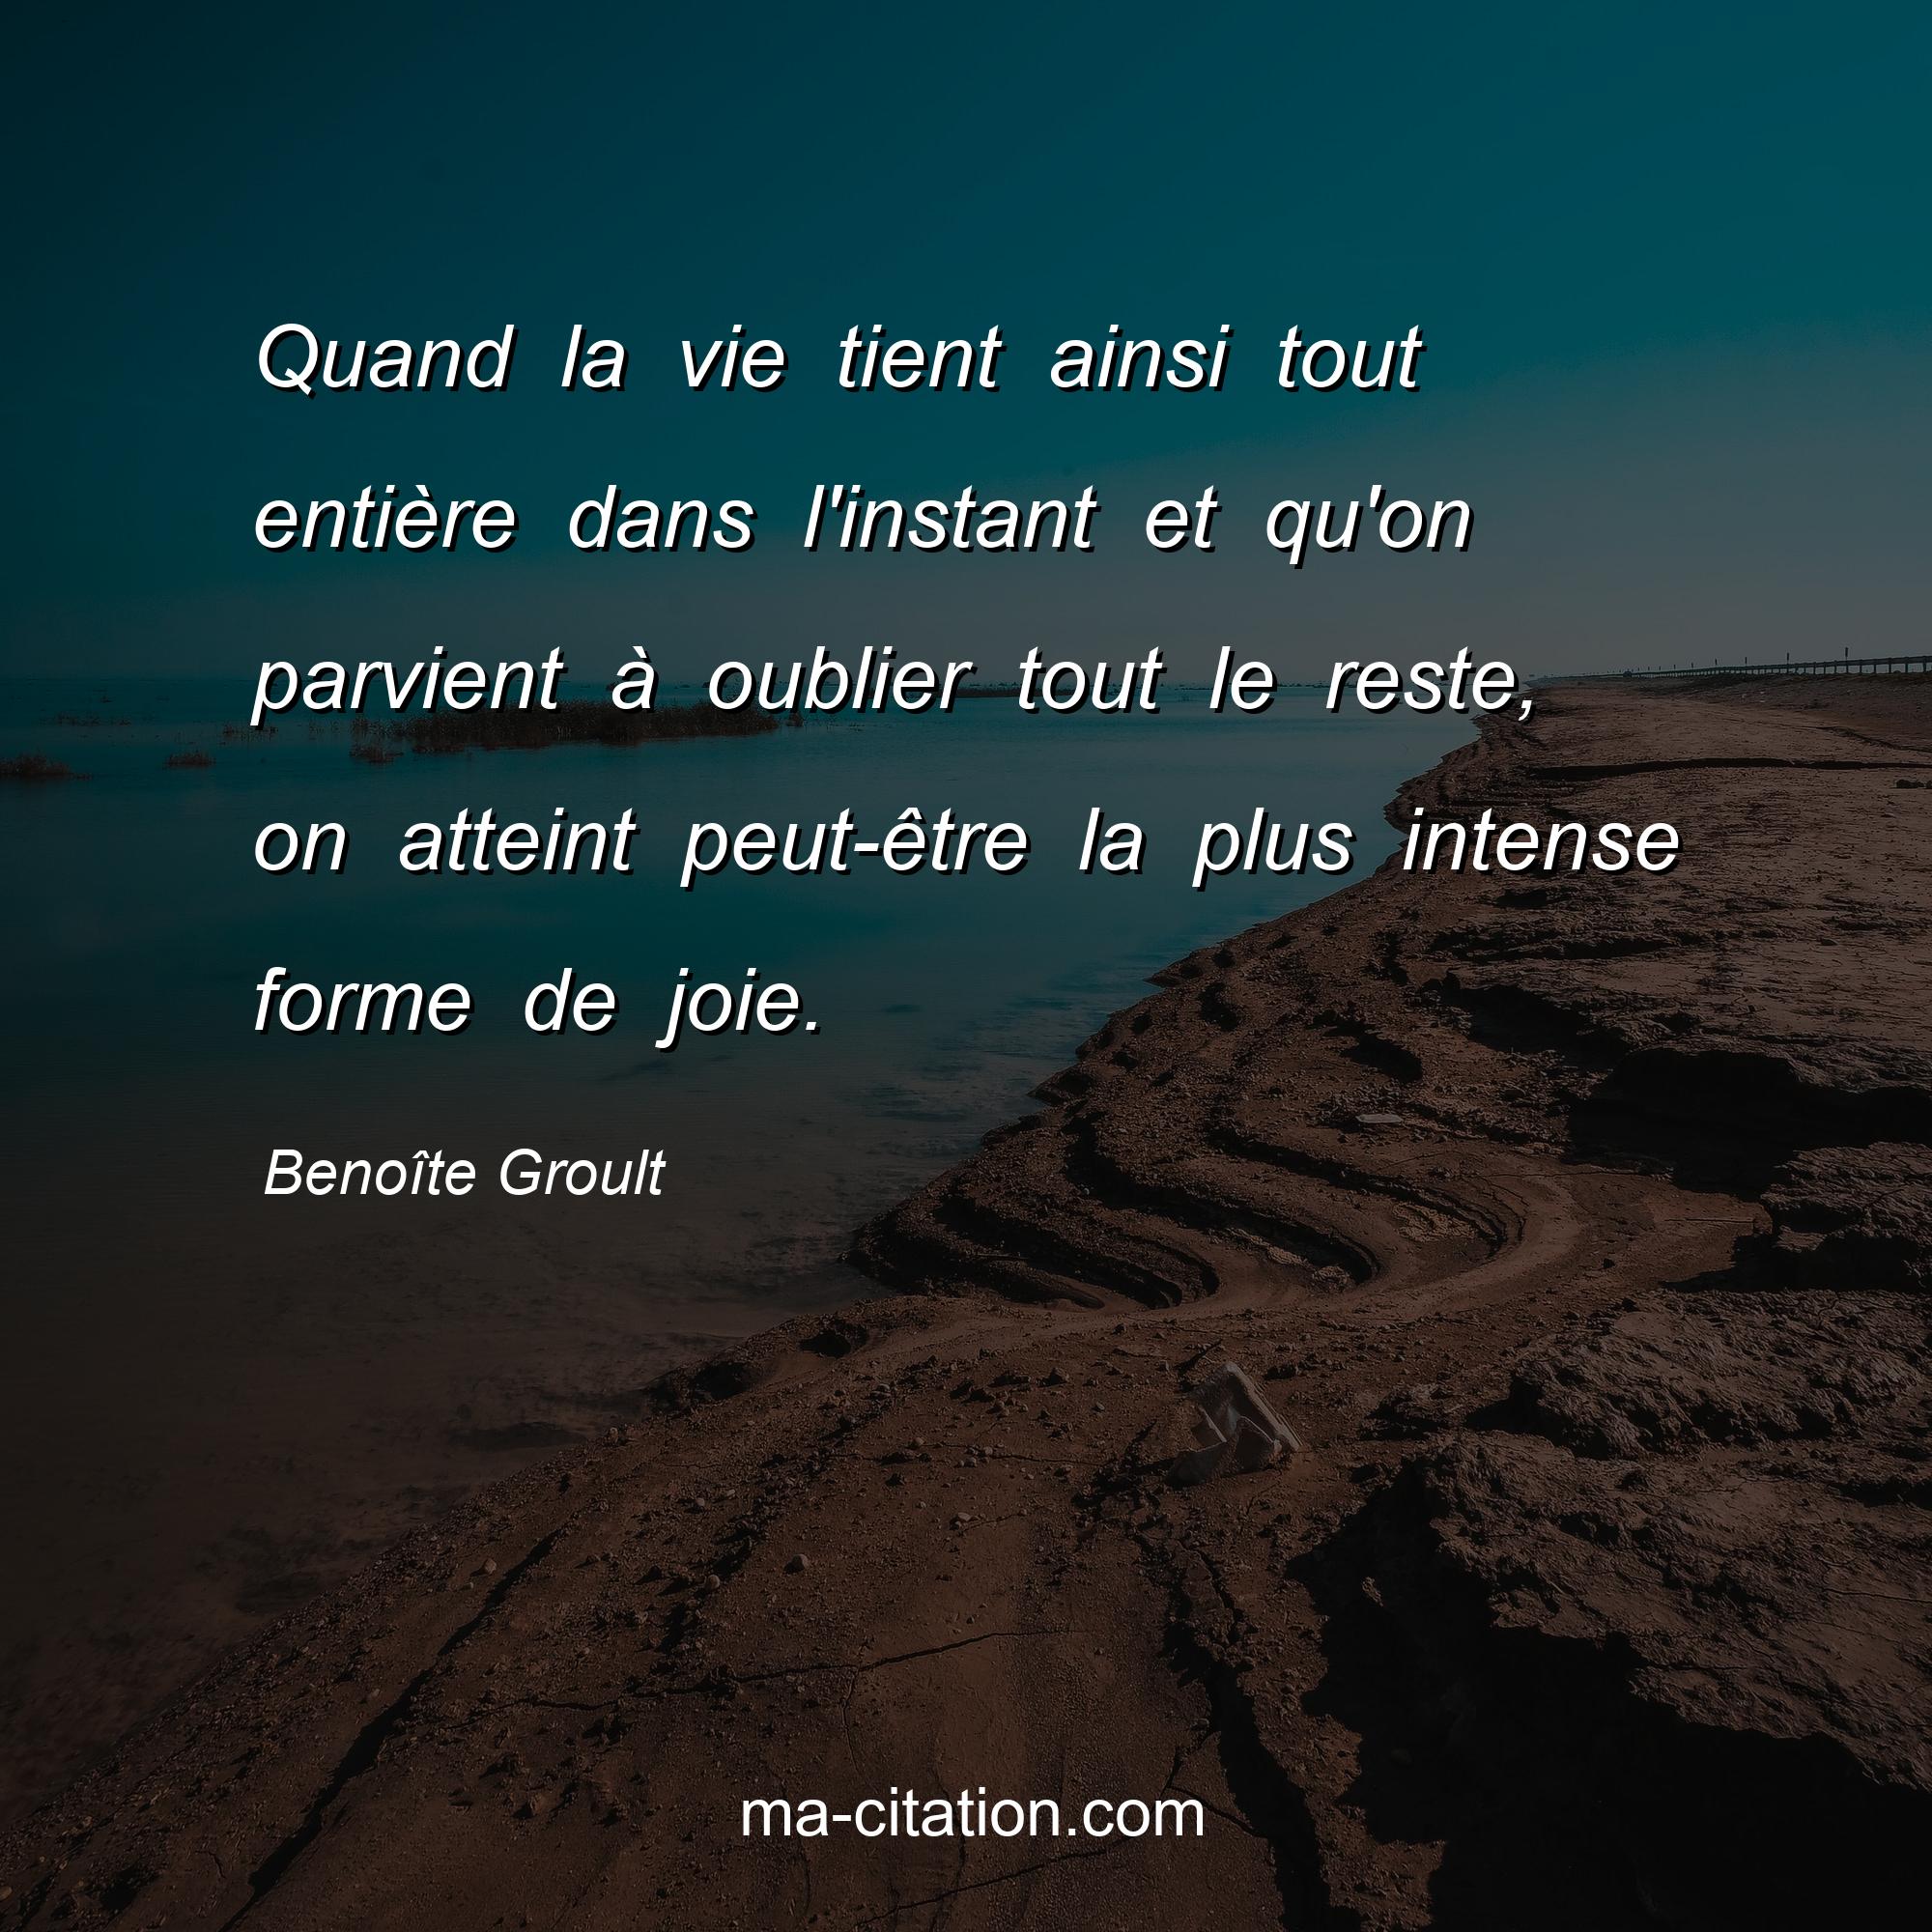 Benoîte Groult : Quand la vie tient ainsi tout entière dans l'instant et qu'on parvient à oublier tout le reste, on atteint peut-être la plus intense forme de joie.